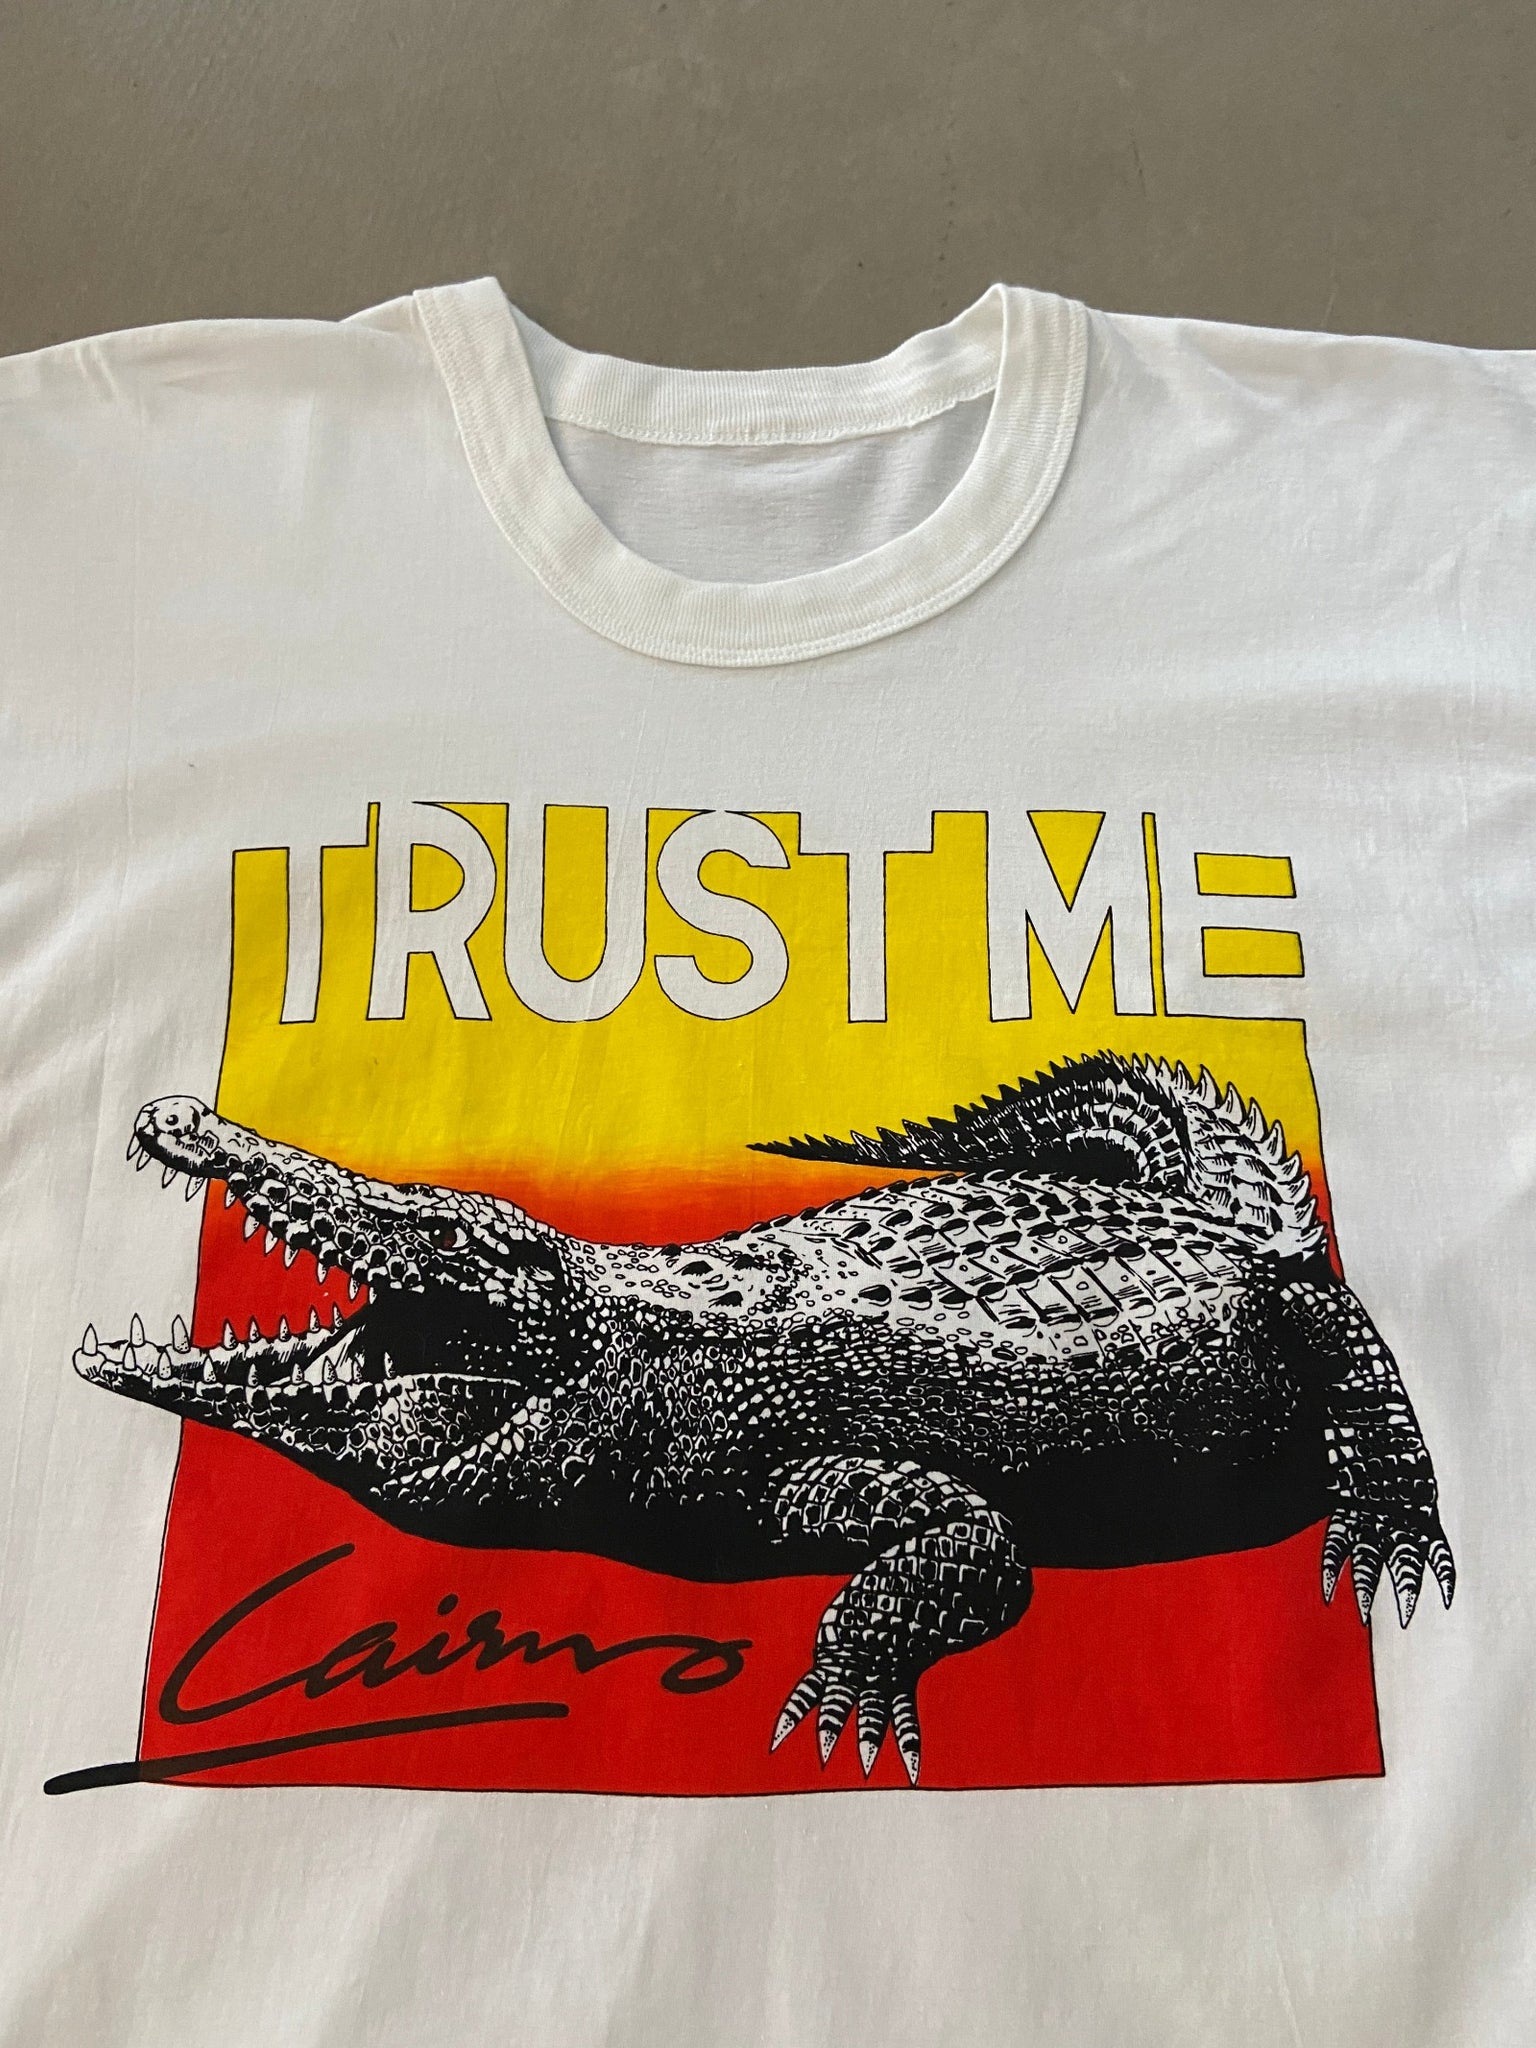 Trust Me Cairns T-shirt - L